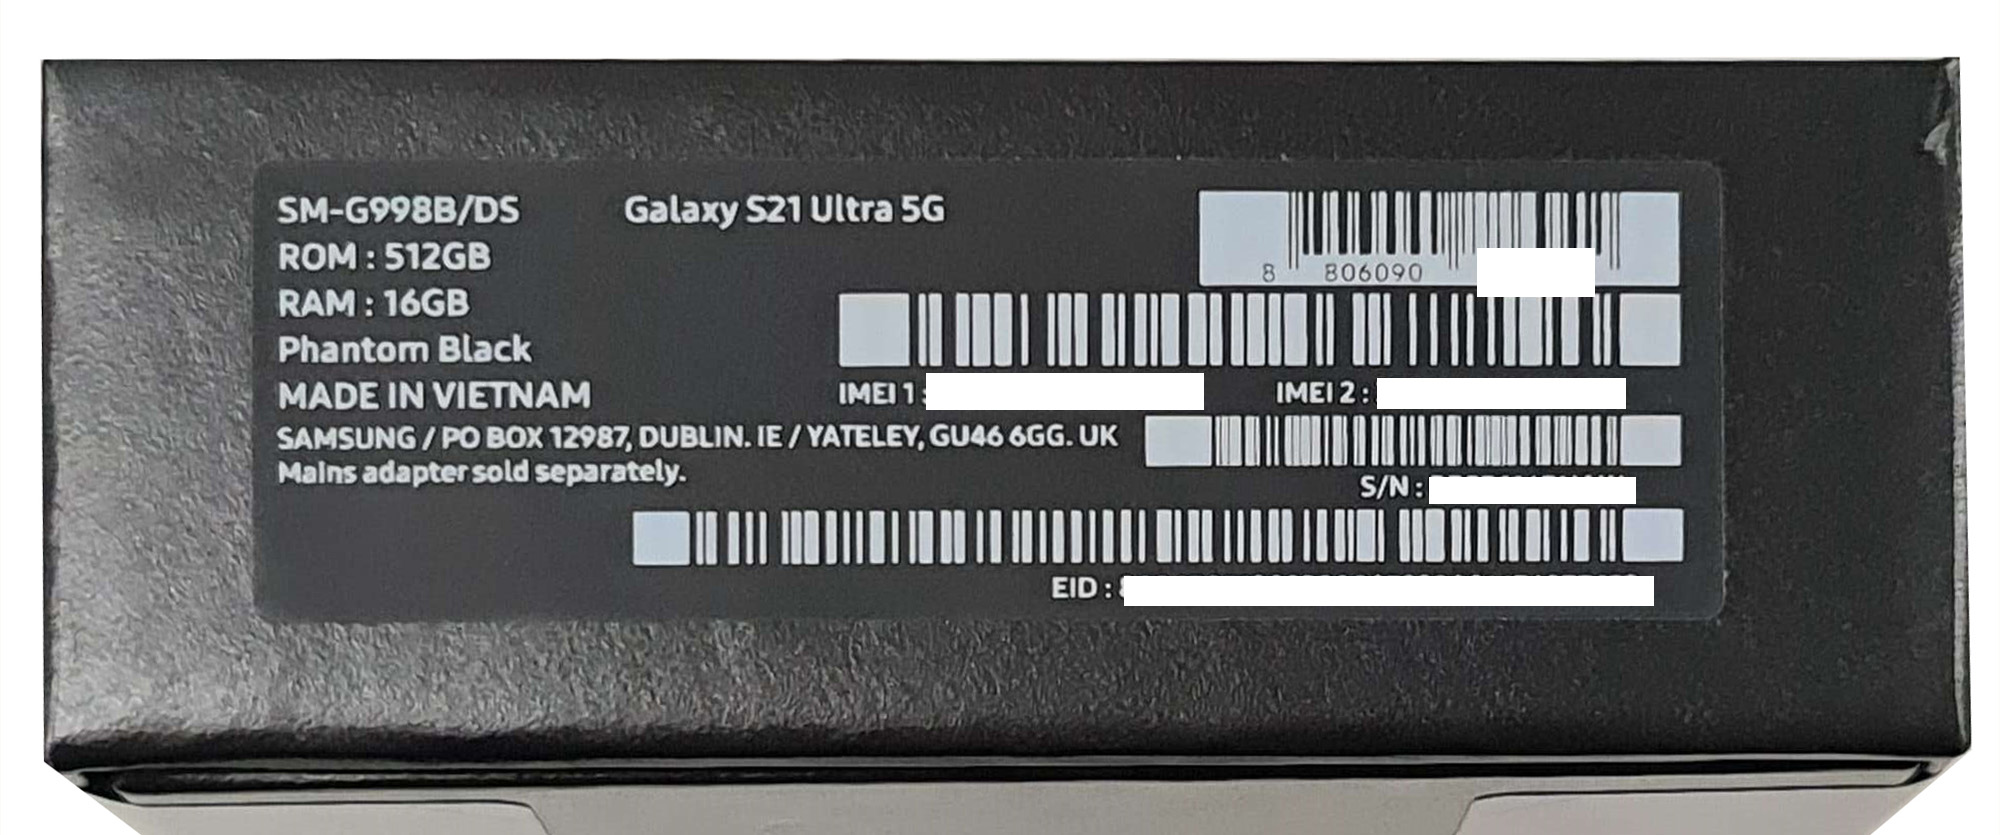 Как проверить s23 на оригинальность. Samsung Galaxy s22 Ultra IMEI. Коробка от самсунг s21 ультра. IMEI Samsung Galaxy s21 Ultra. Коробка от Samsung Galaxy s21 Ultra.